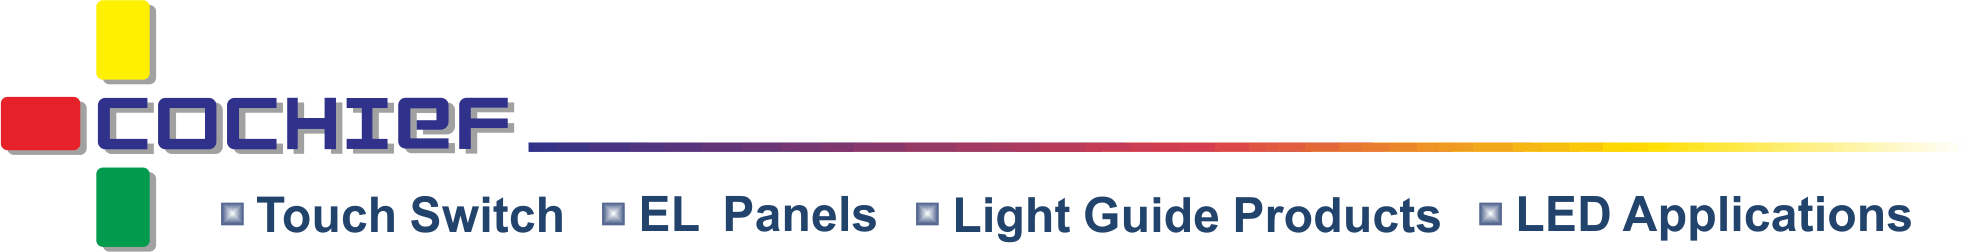 皓智企業股份有限公司 - 容量性インテリジェント光効果タッチモジュール、薄いタッチフィルム、コールドライト、ライトガイドの開発、設計、製造。